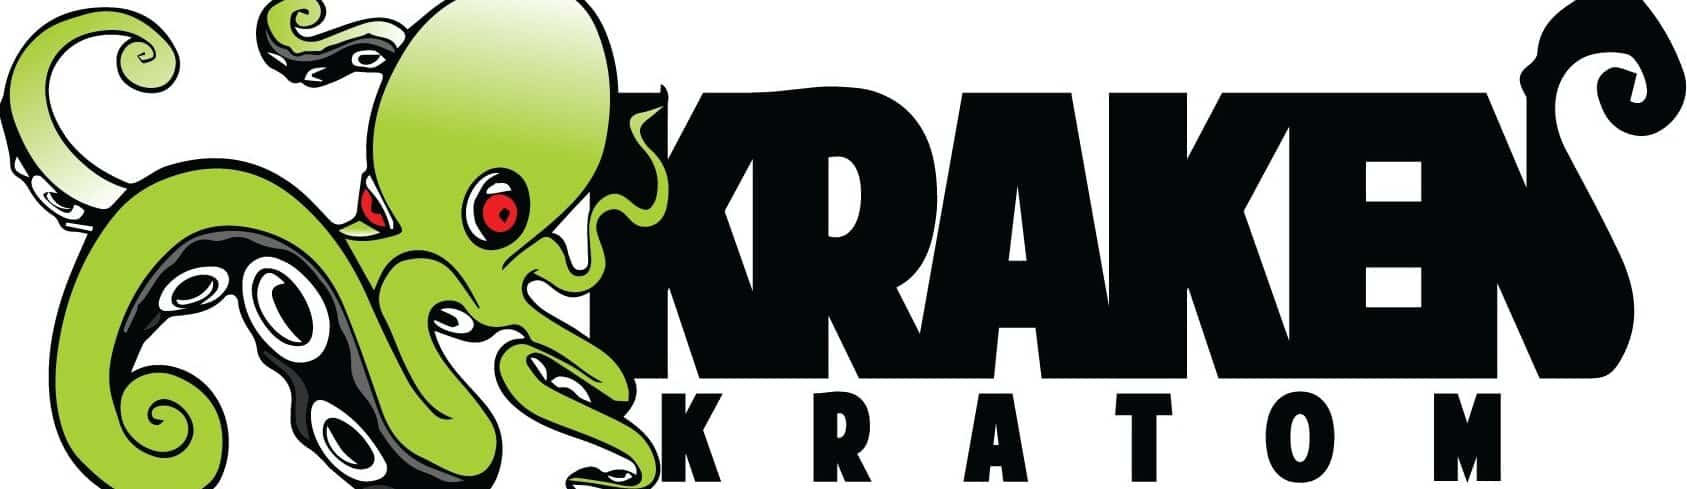 image of kraken kratom logo